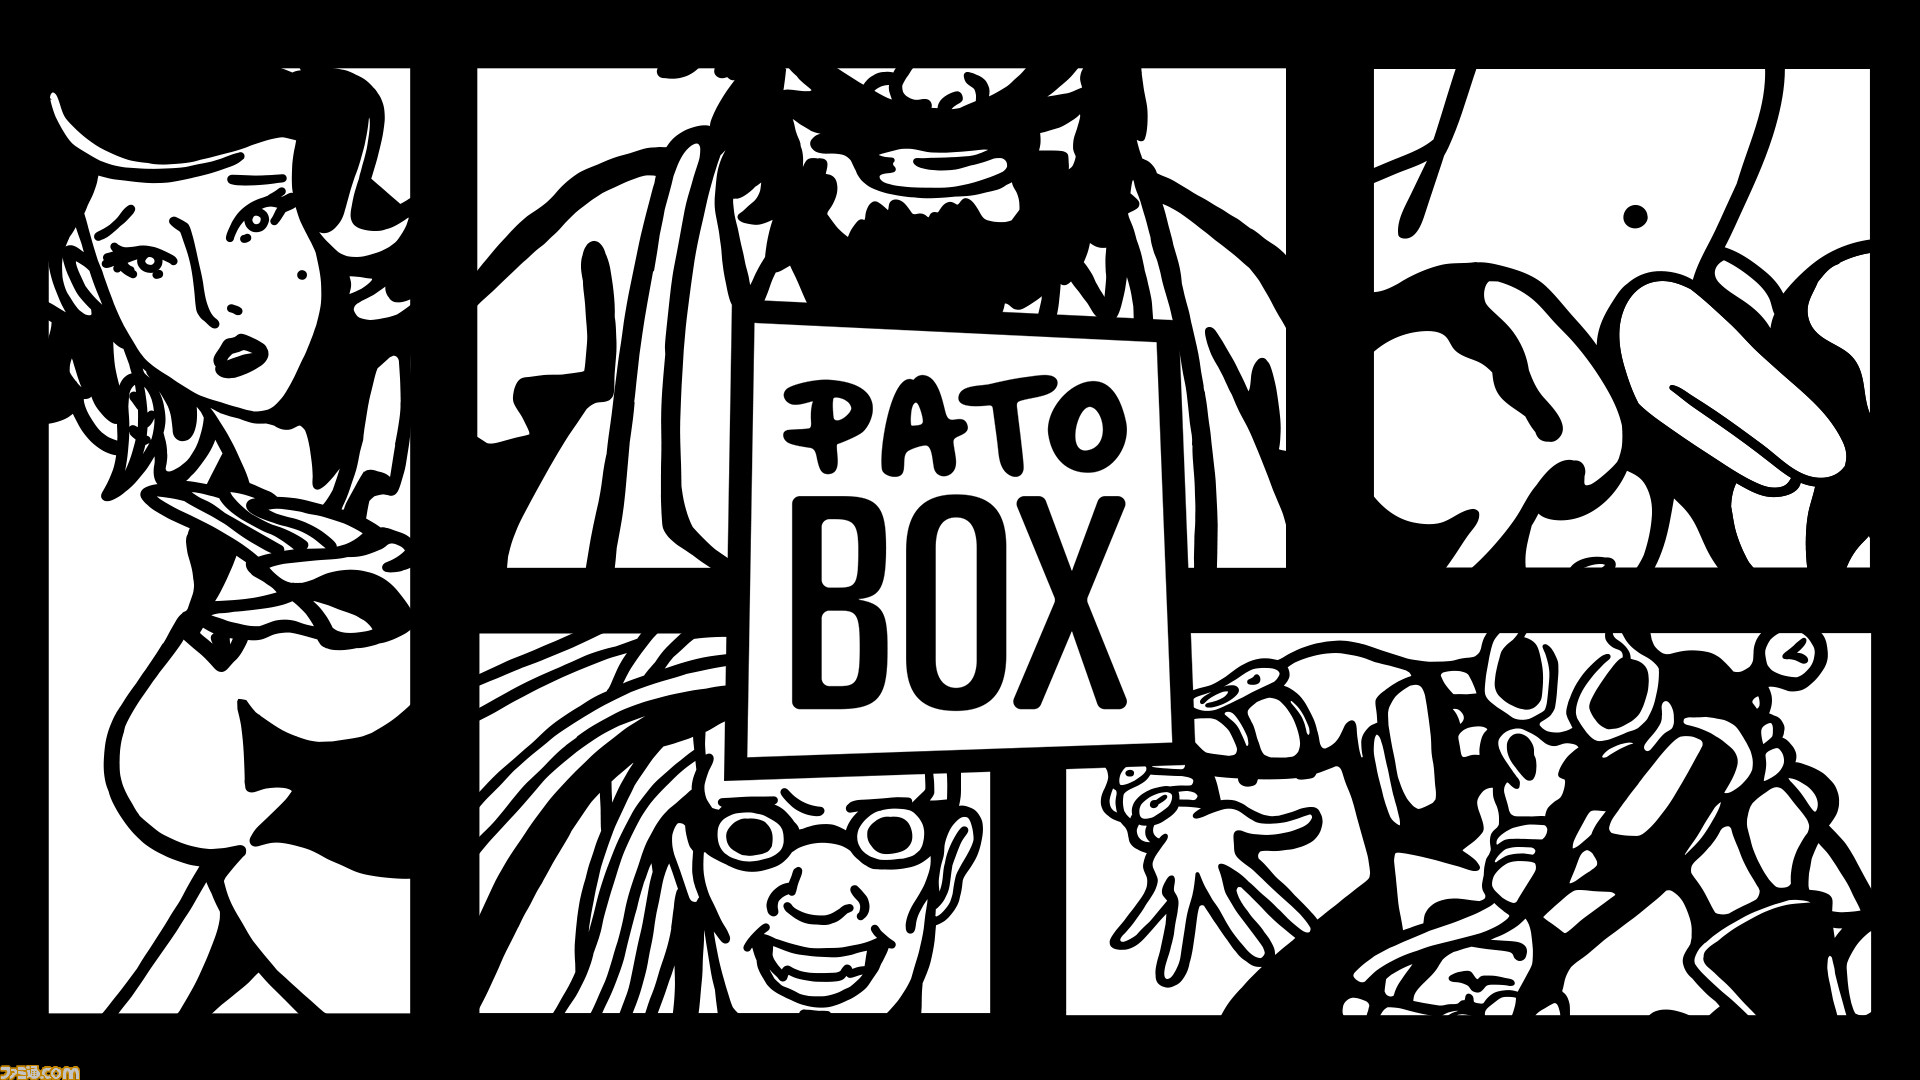 Pato Box がswitch Ps4 Ps Vitaで配信開始 アヒルのボクサーが拳で巨悪と戦うるコミックスタイルのアクションゲーム ファミ通 Com